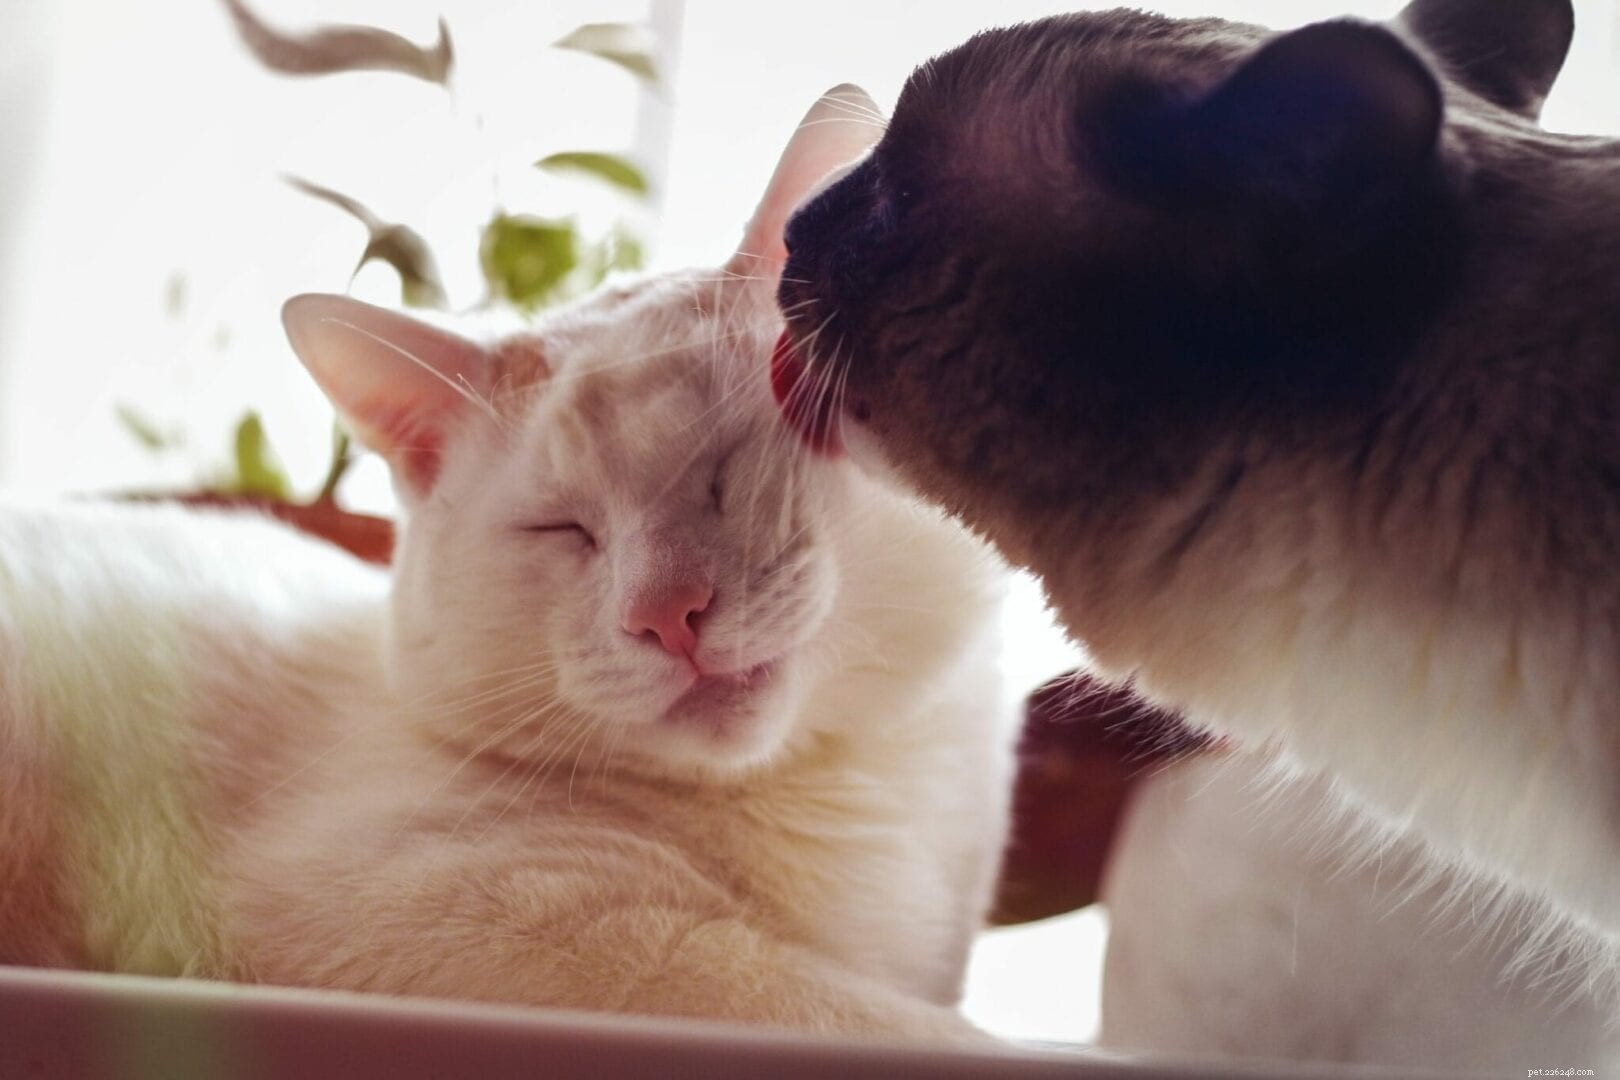 Perché i gatti si puliscono a vicenda?